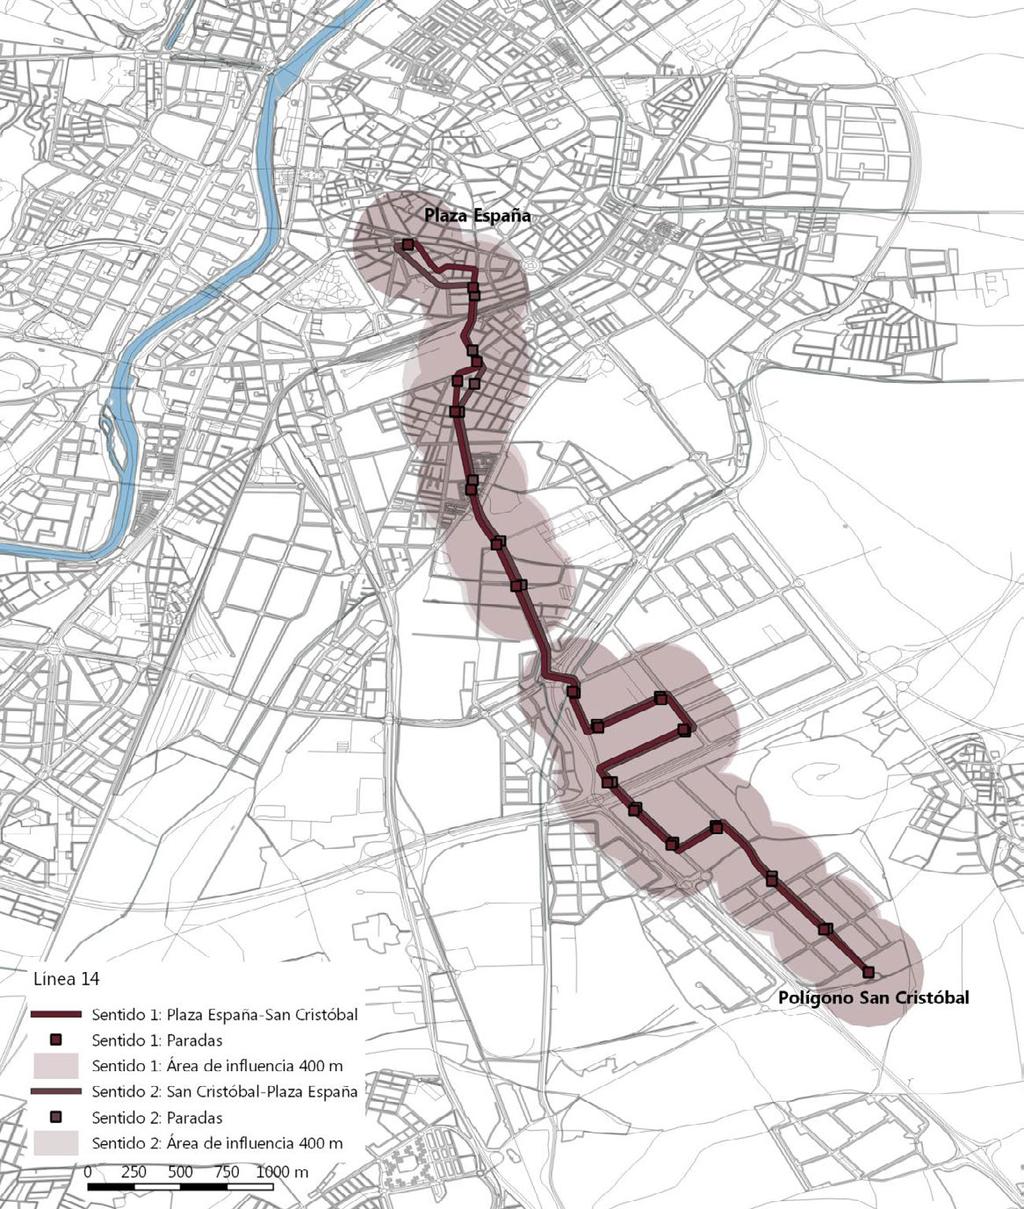 Línea 14: Plaza España-Polígono San Cristóbal Plan de implantación de una línea de tranvía en Valladolid Características de la línea Demanda (2012) Longitud sentido 1 (m) 7.